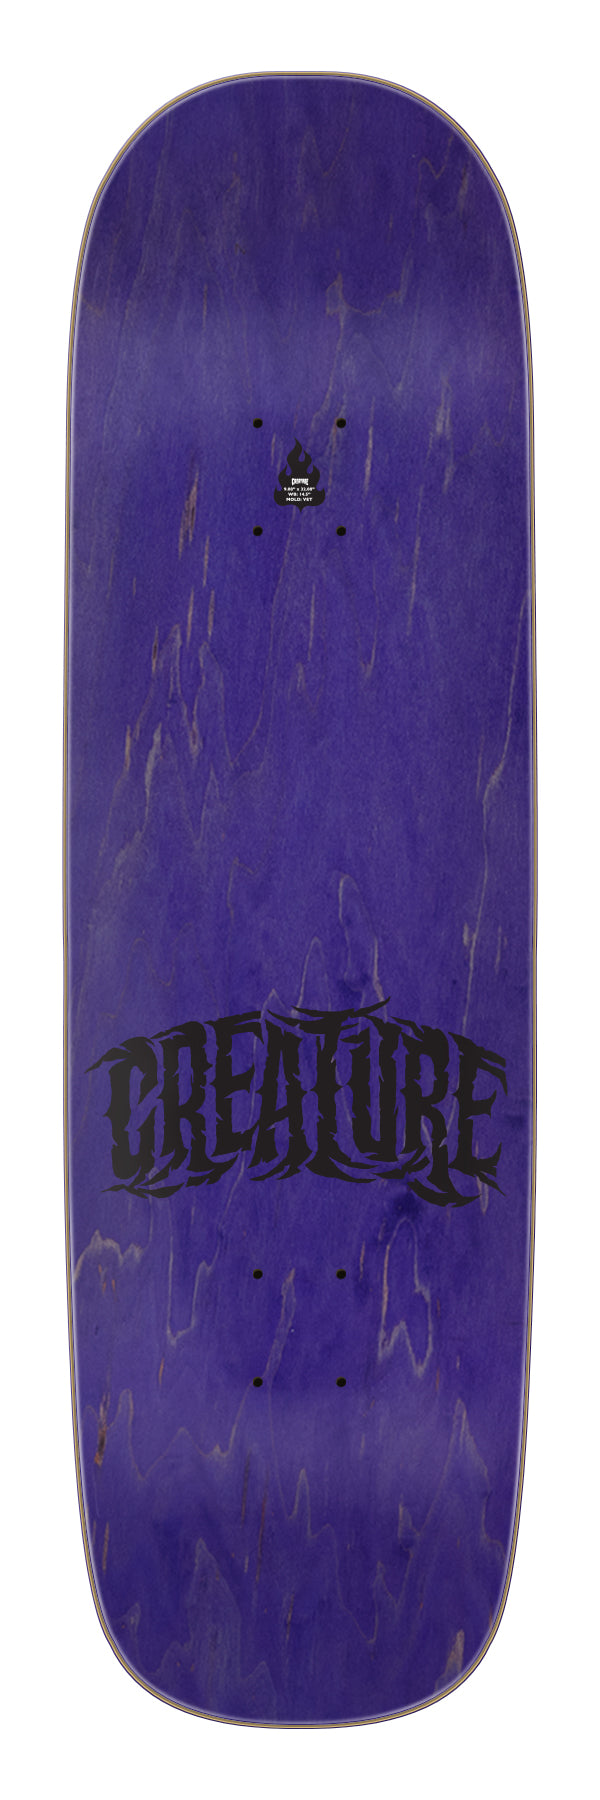 Creature - Tabla Hitz Battle Gate Pro 9.08x32.08 - Lo Mejor De Creature - Solo Por $59990! Compra Ahora En Wallride Skateshop